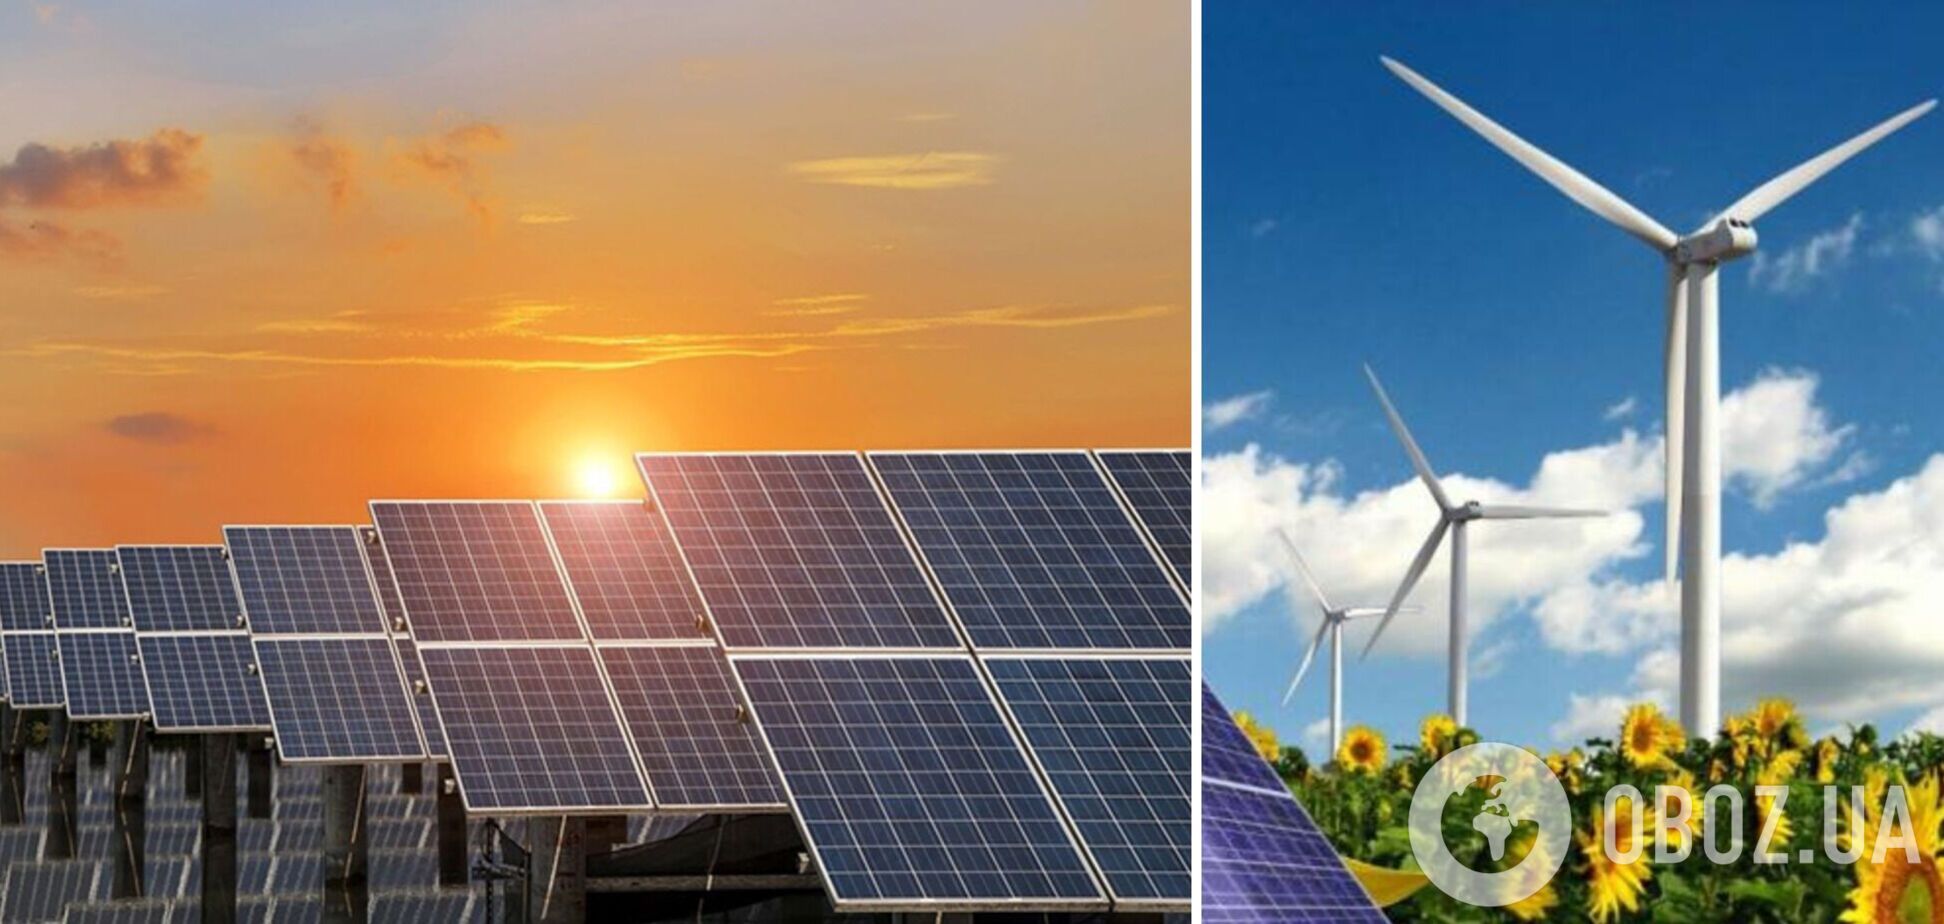  Енергоспівтовариство допоможе вирішити проблему боргів у 'зеленій' енергетиці України